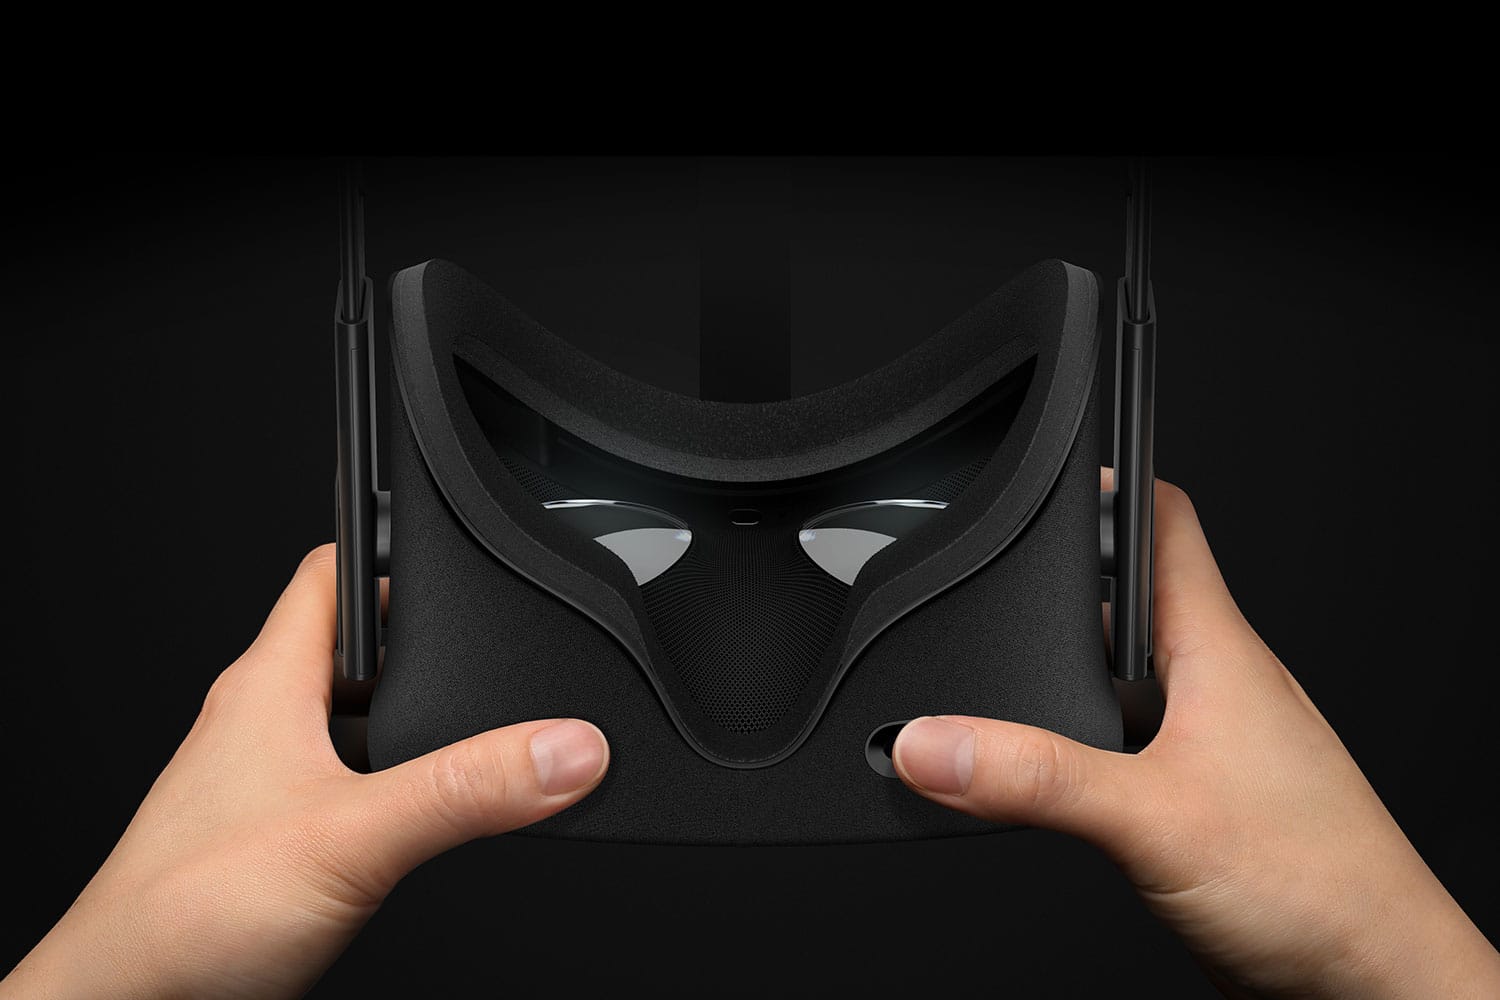 oculus rift product image